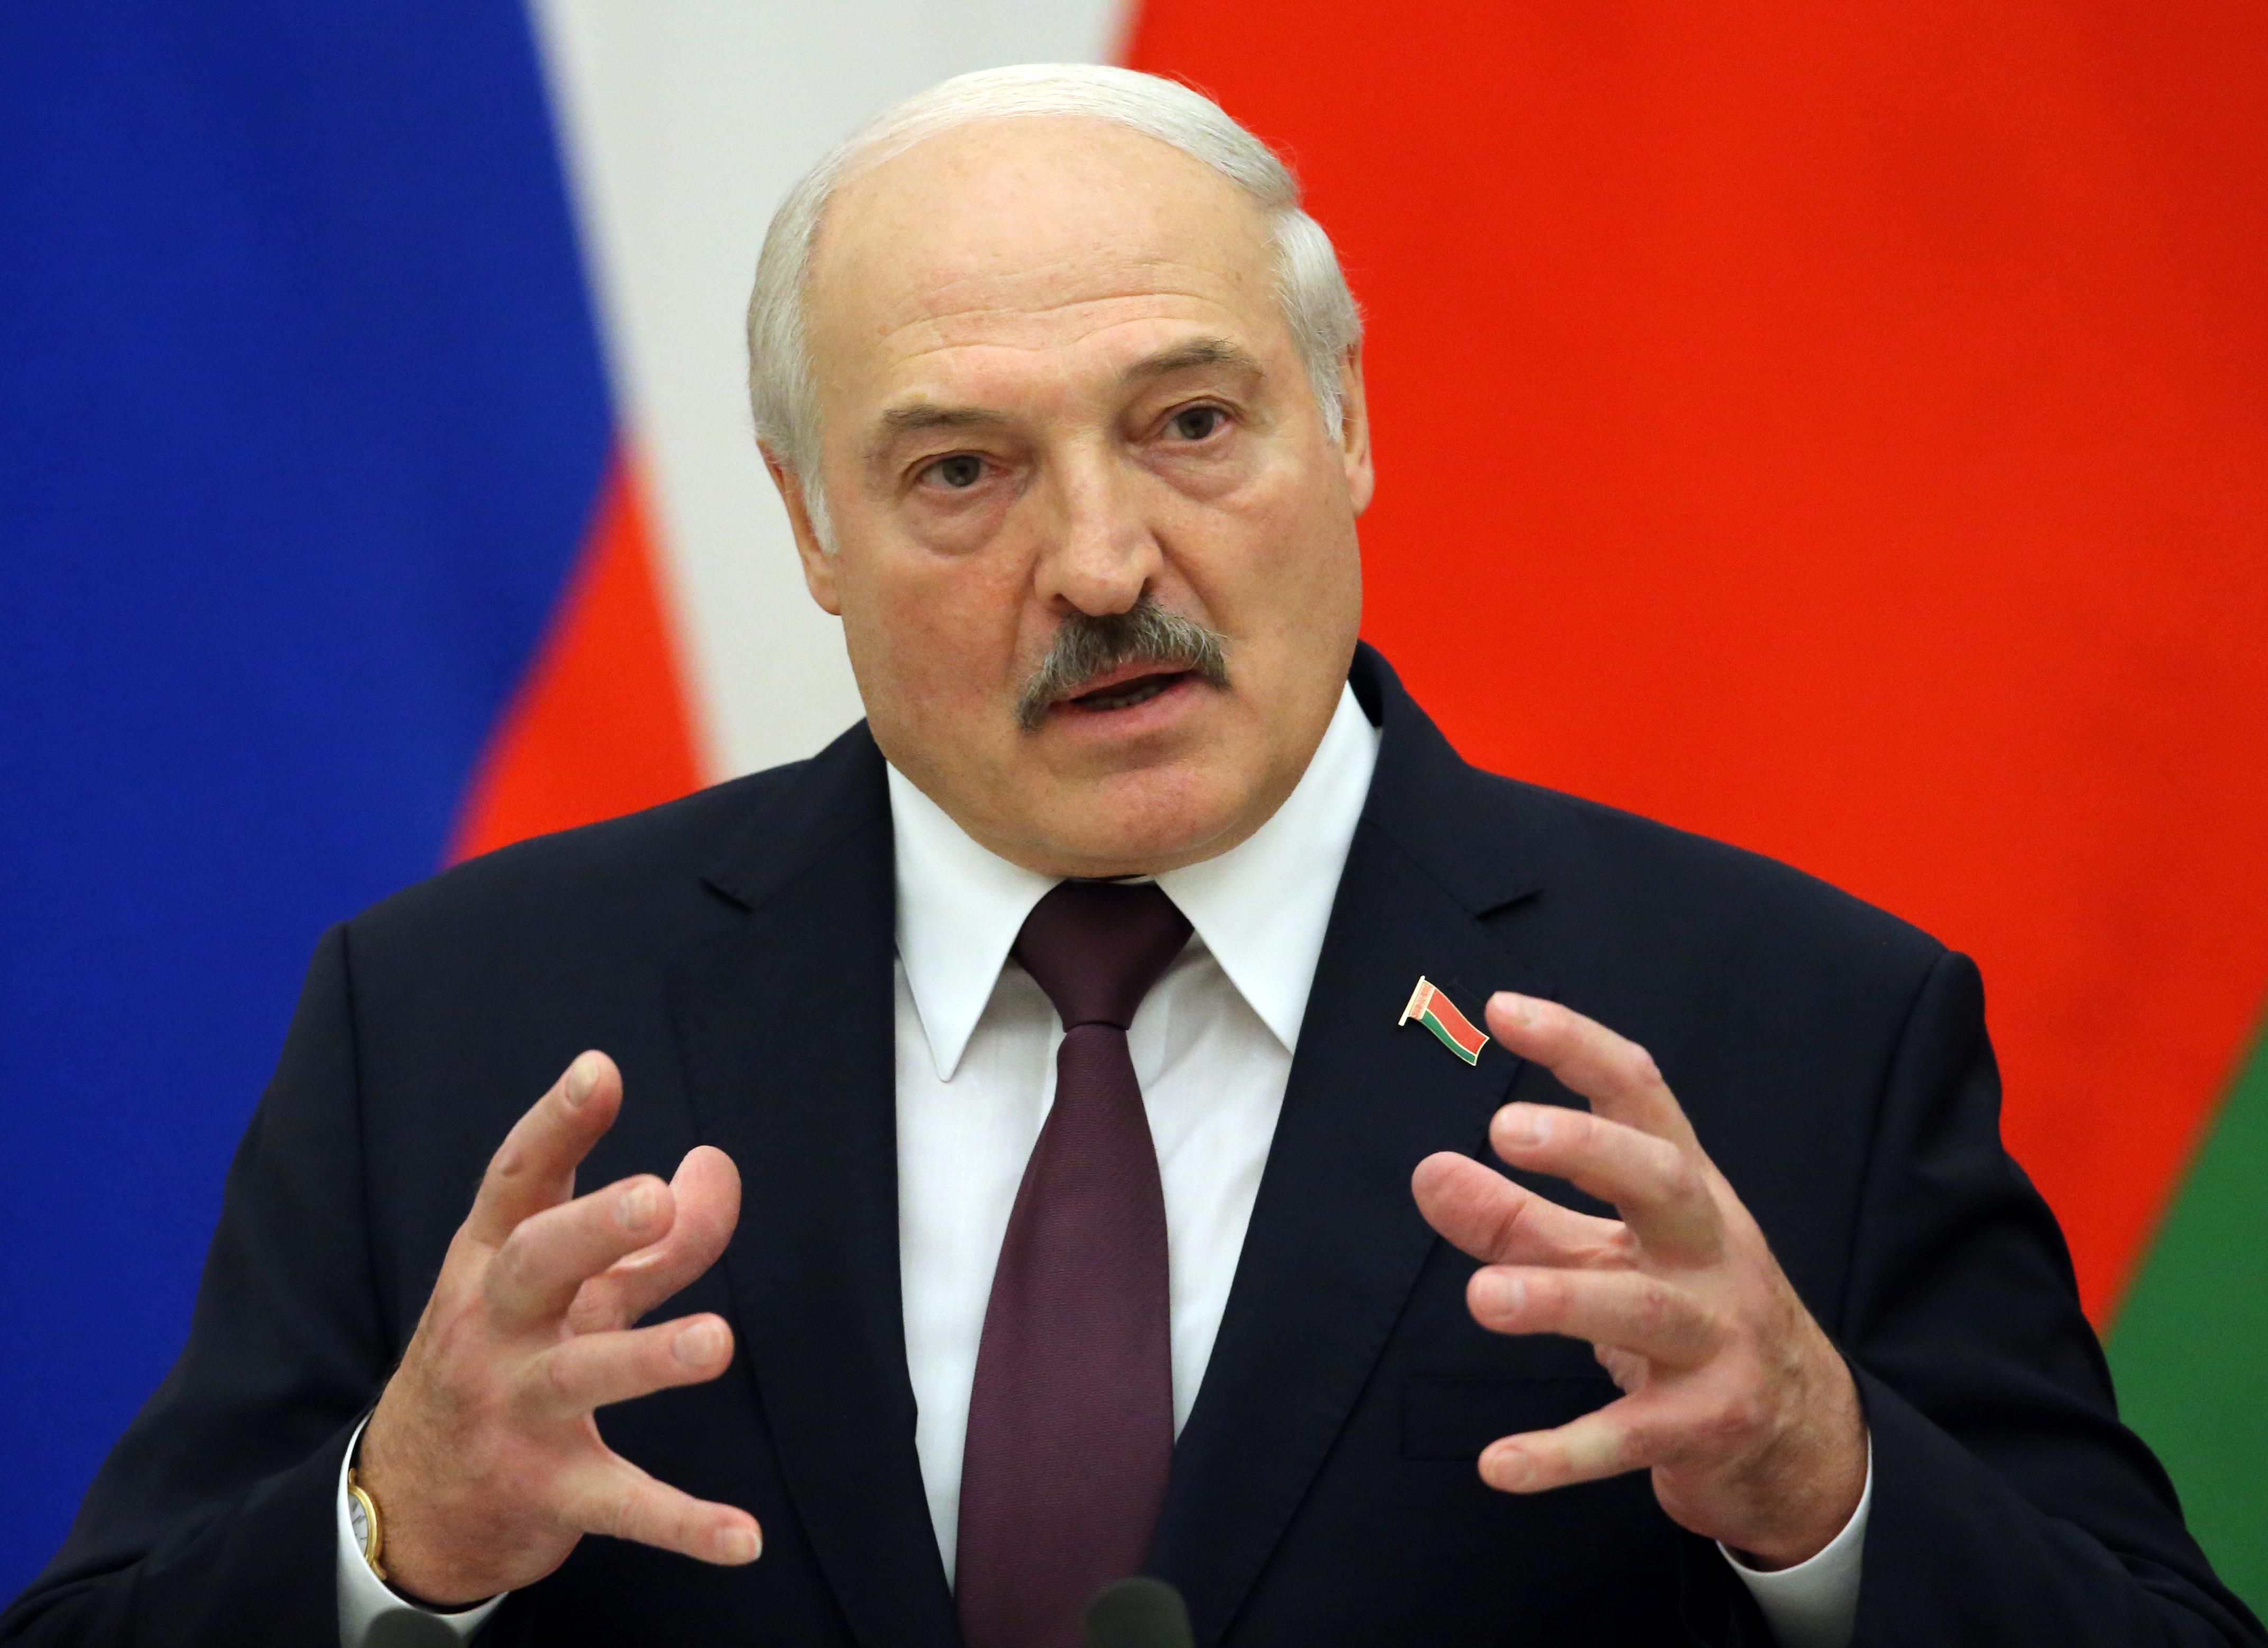 Може бути головним "контрабандистом": Німеччина розслідує роль Лукашенка в напливі нелегалів - новини Білорусь - 24 Канал